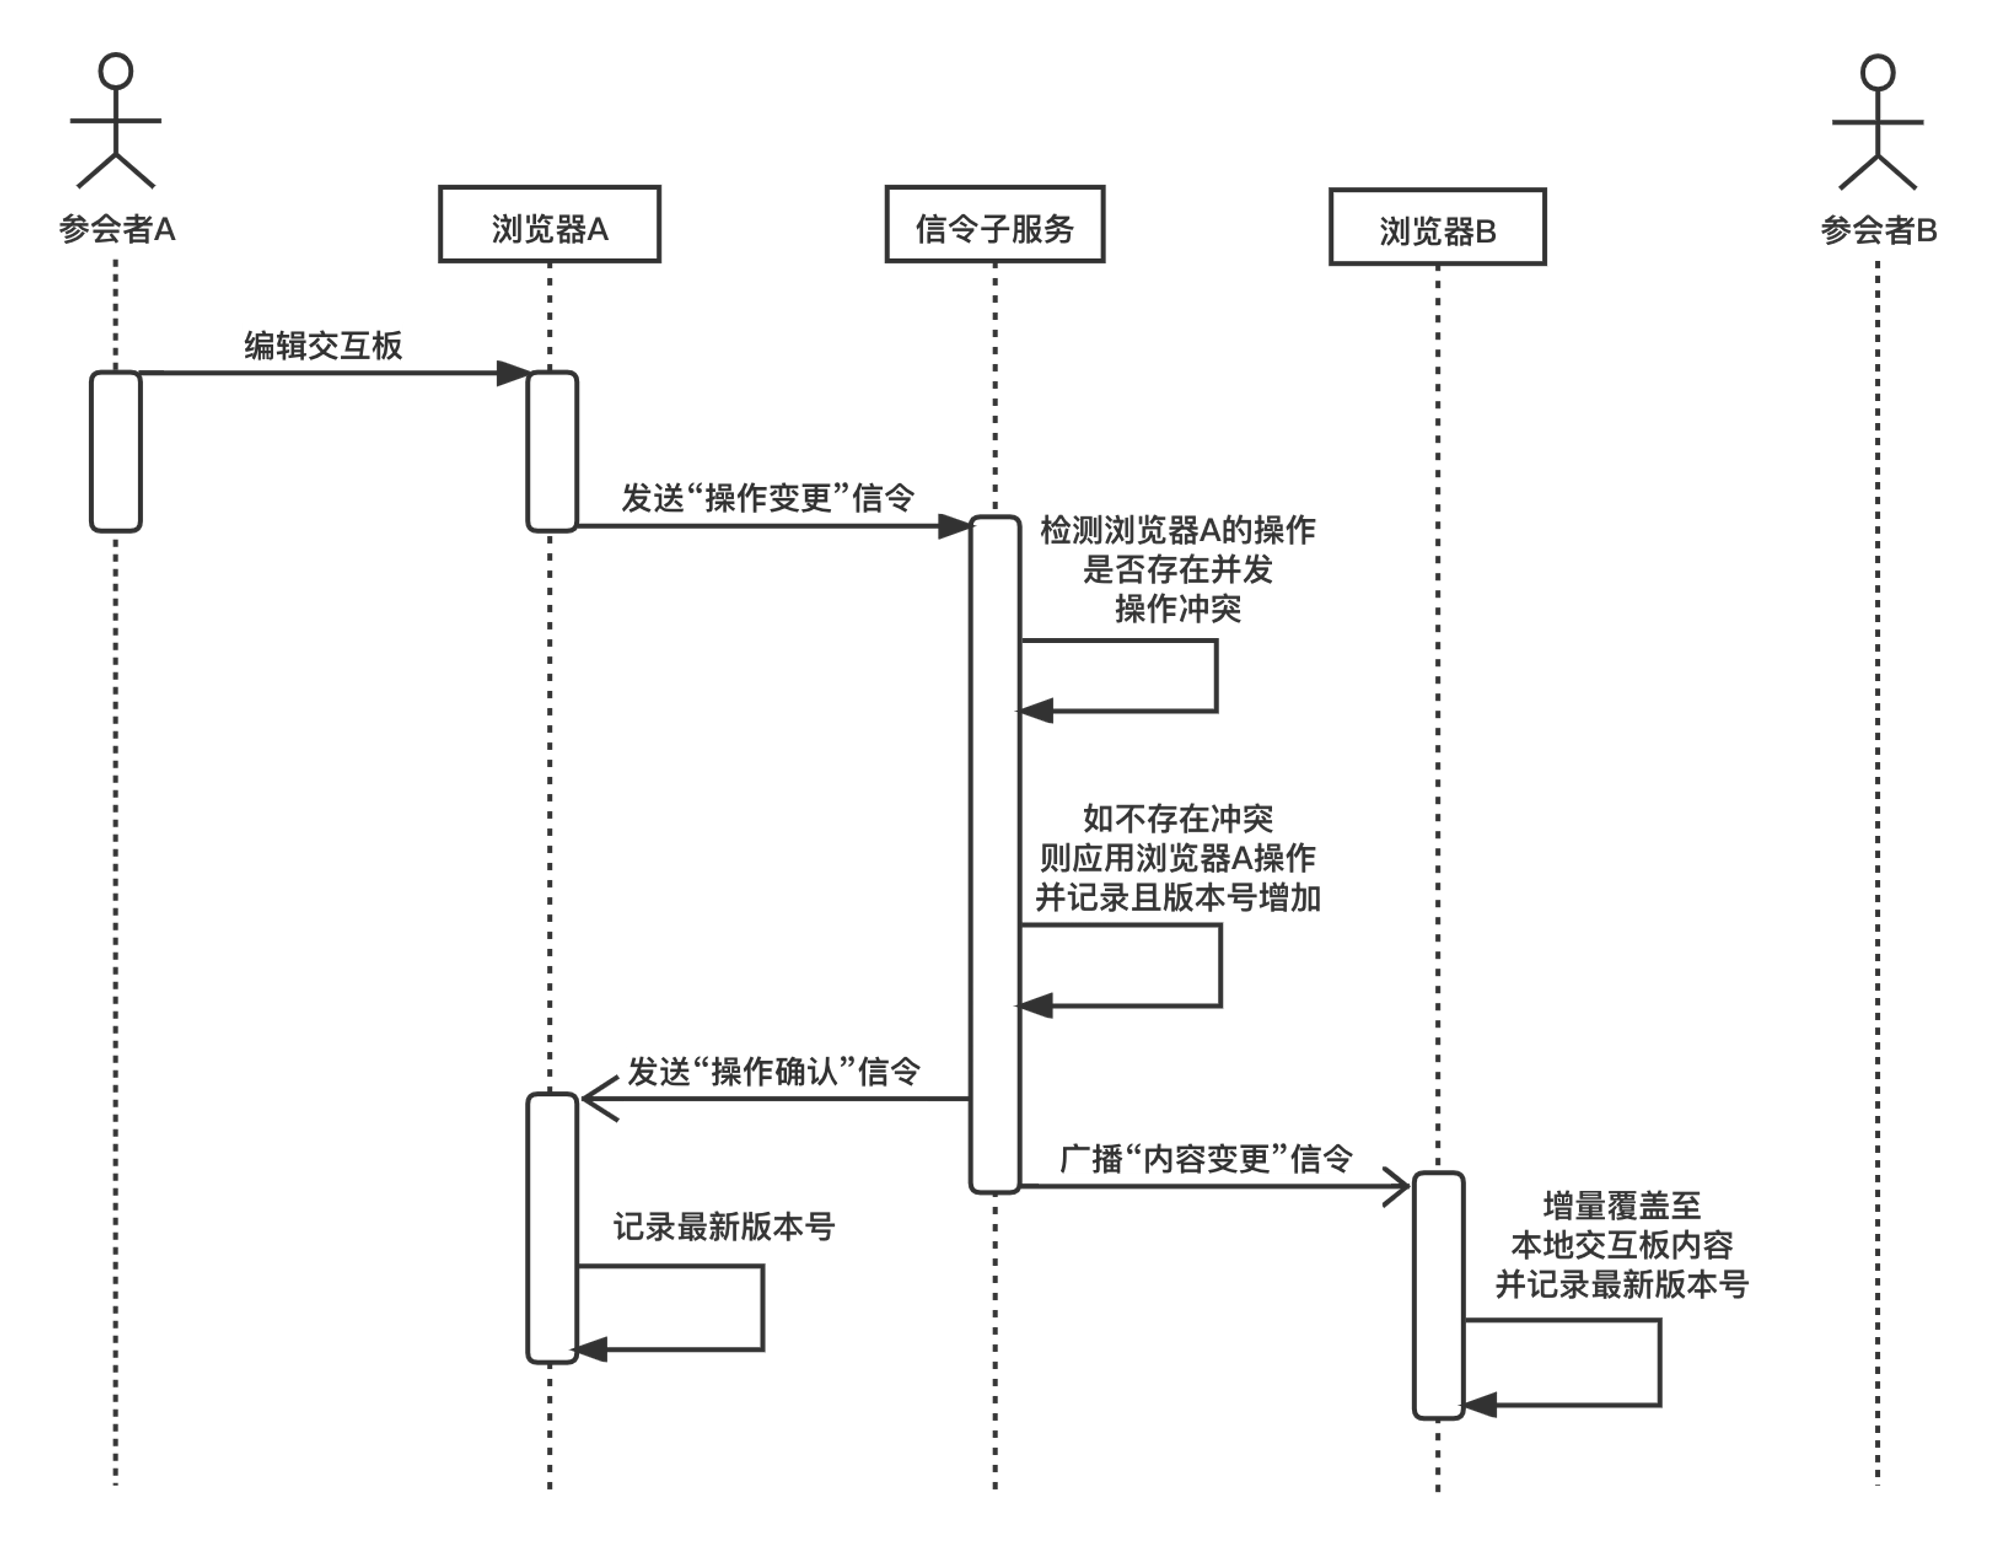 图5-5 交互板非并发操作同步的时序图